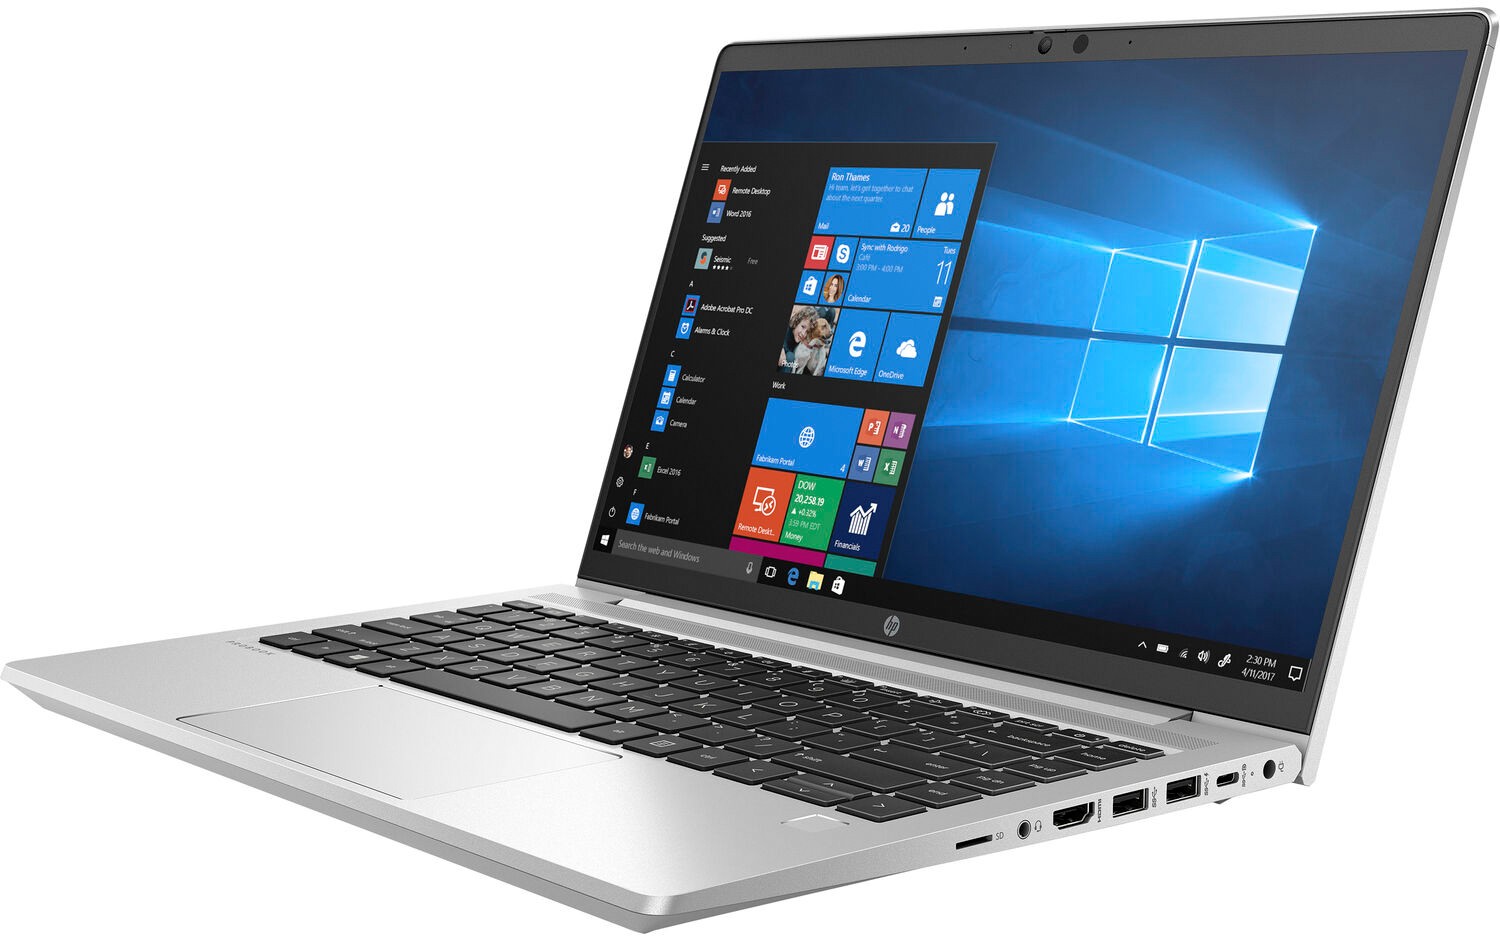 Ноутбук HP ProBook 440 G8 Core i5-1135G7 2.4GHz,14" FHD (1920x1080) AG,8Gb DDR4(1),256Gb SSD,45Wh LL,FPR,1.6kg,1y,Silver,Win10Pro-39333